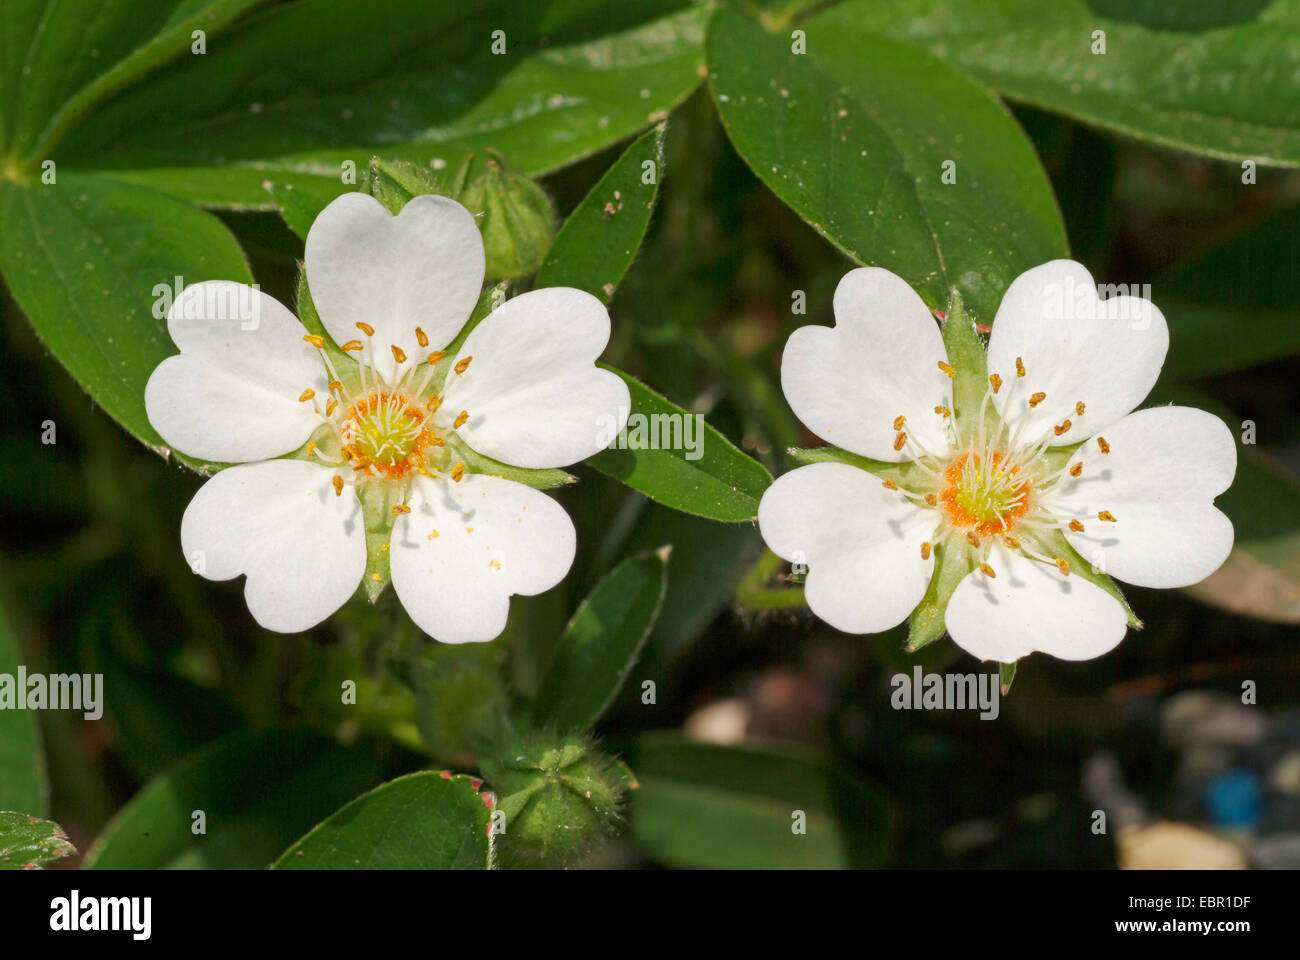 White Cinquefoil (Potentilla alba), flowers, Germany Stock Photo